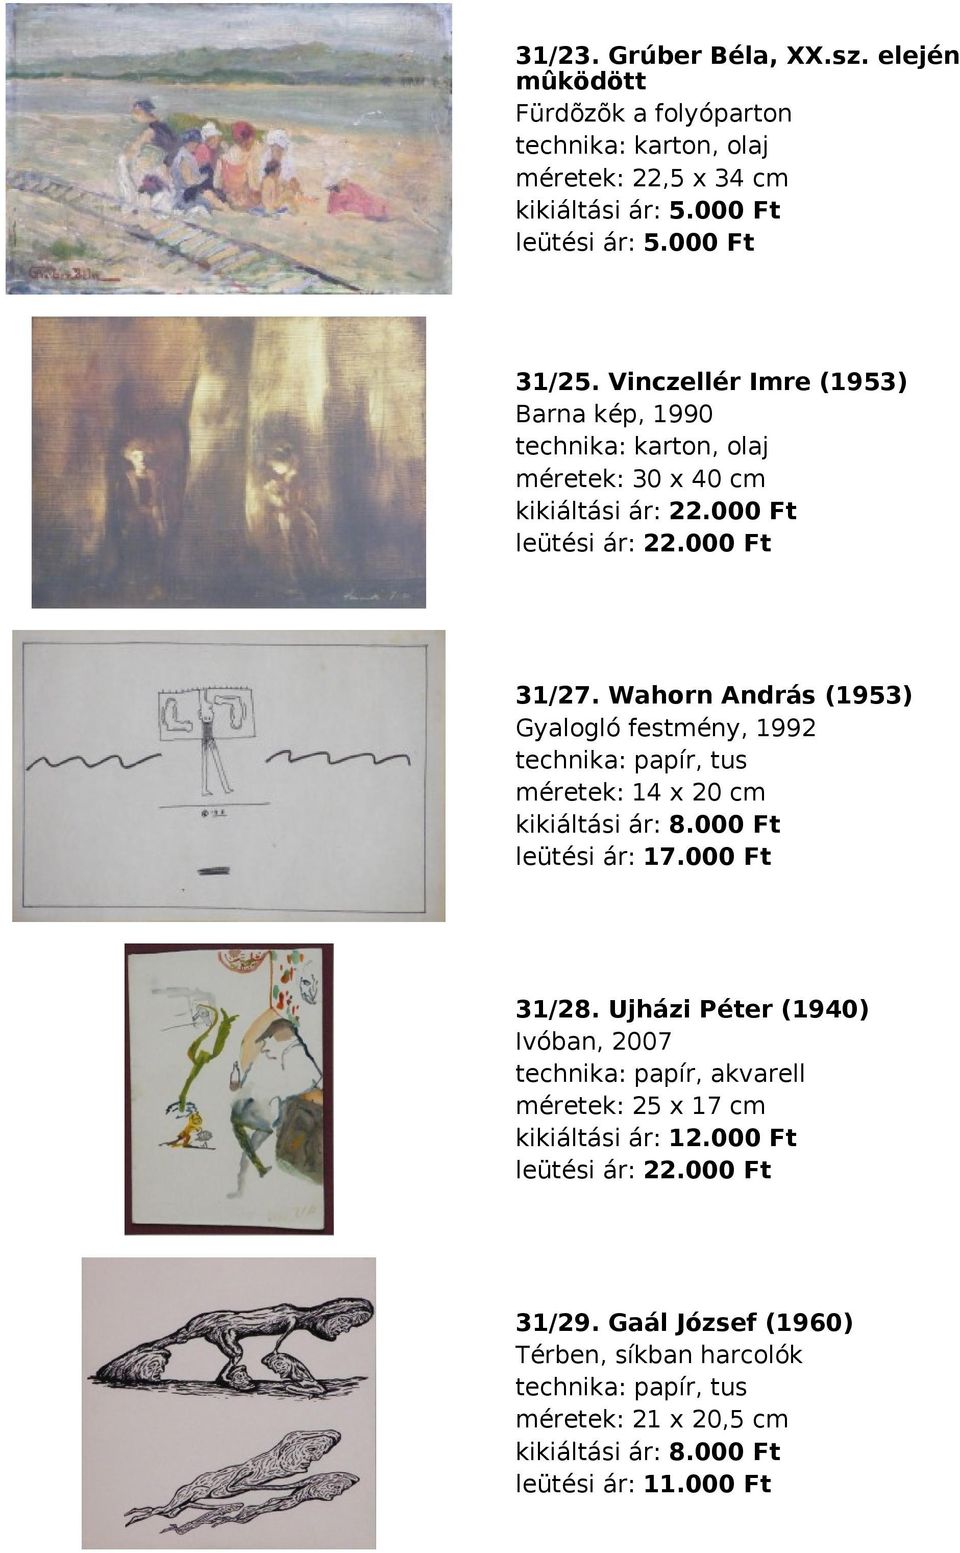 Wahorn András (1953) Gyalogló festmény, 1992 papír, tus méretek: 14 x 20 cm kikiáltási ár: 8.000 Ft leütési ár: 17.000 Ft 31/28.